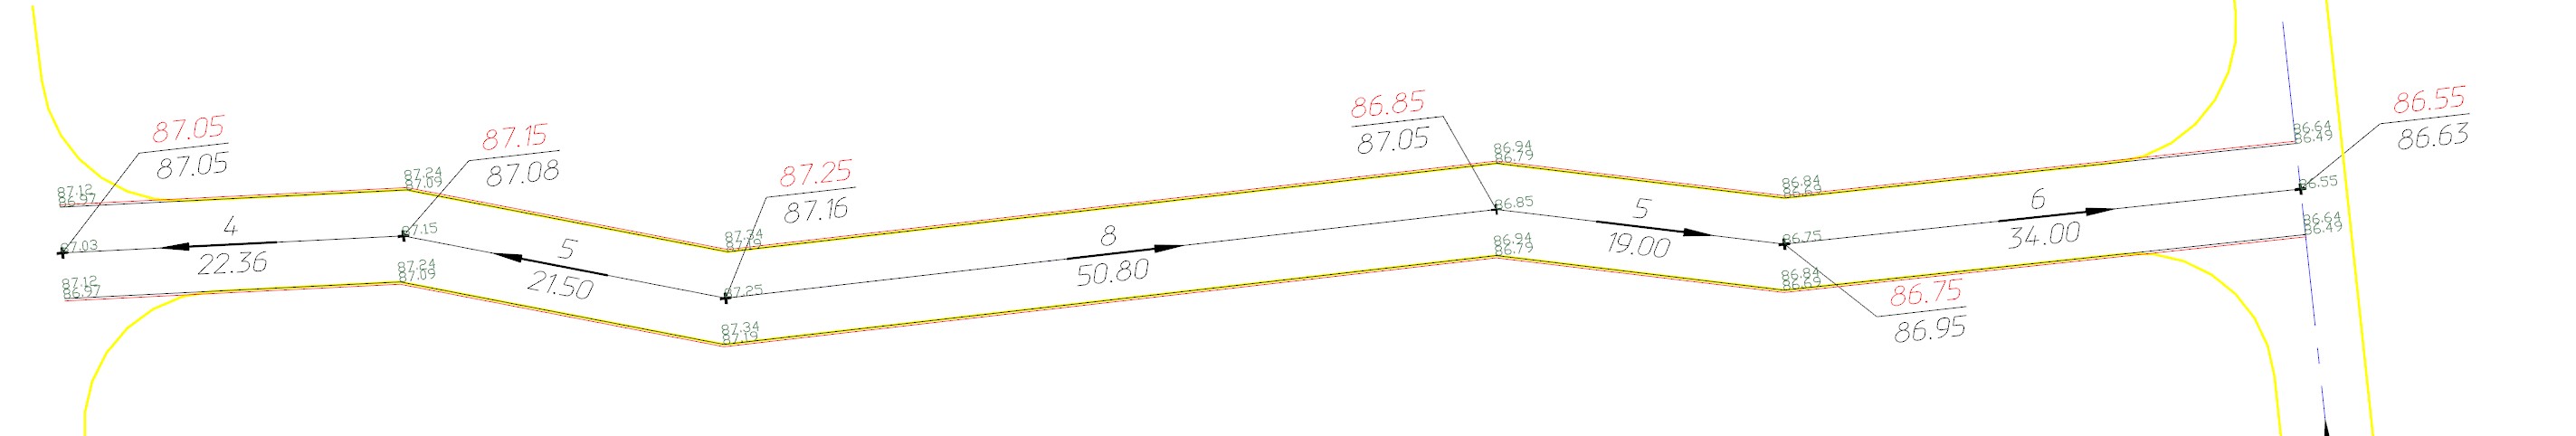 Рис. 33. Пример построения структурных линий разрыва из стандартной структурной линии